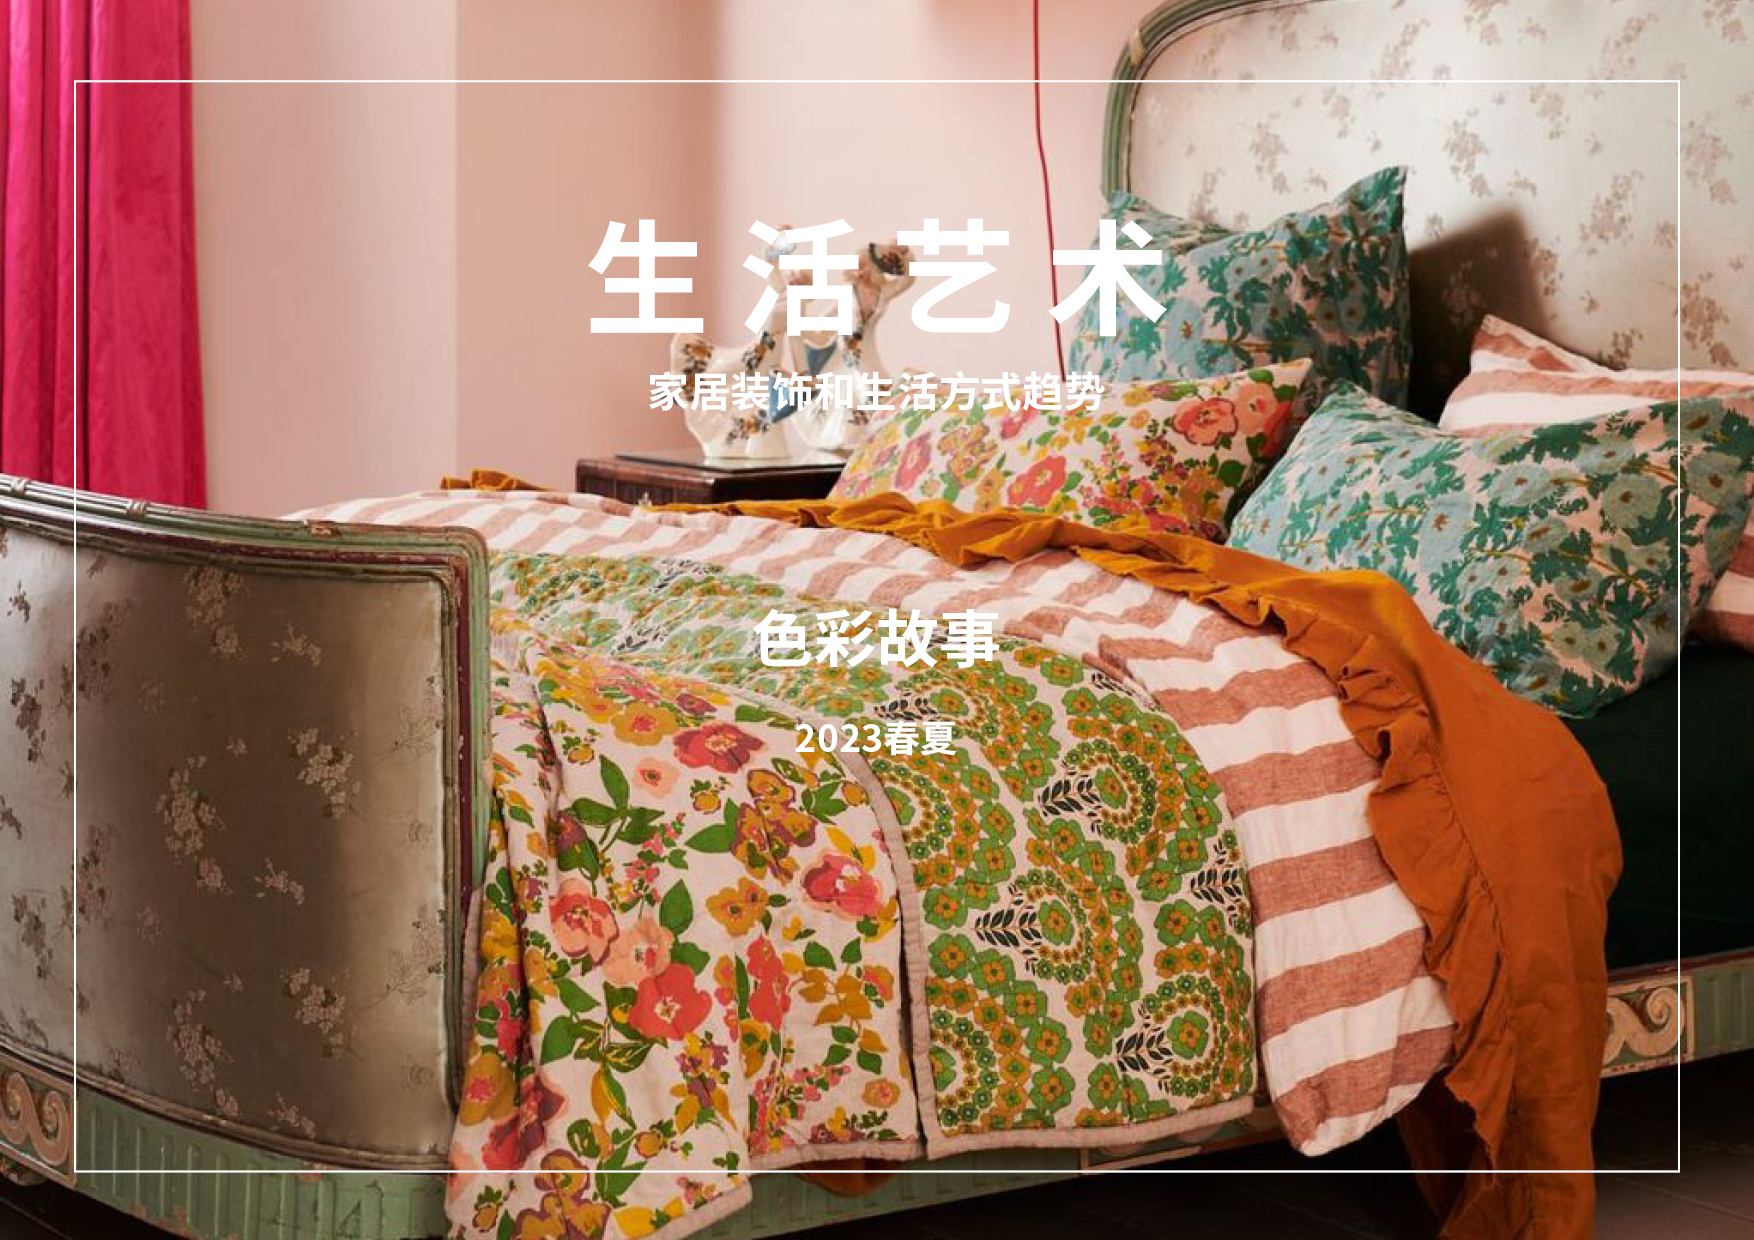 2023春夏家居装饰和生活方式色彩趋势预测 -- 生活艺术（中文版）